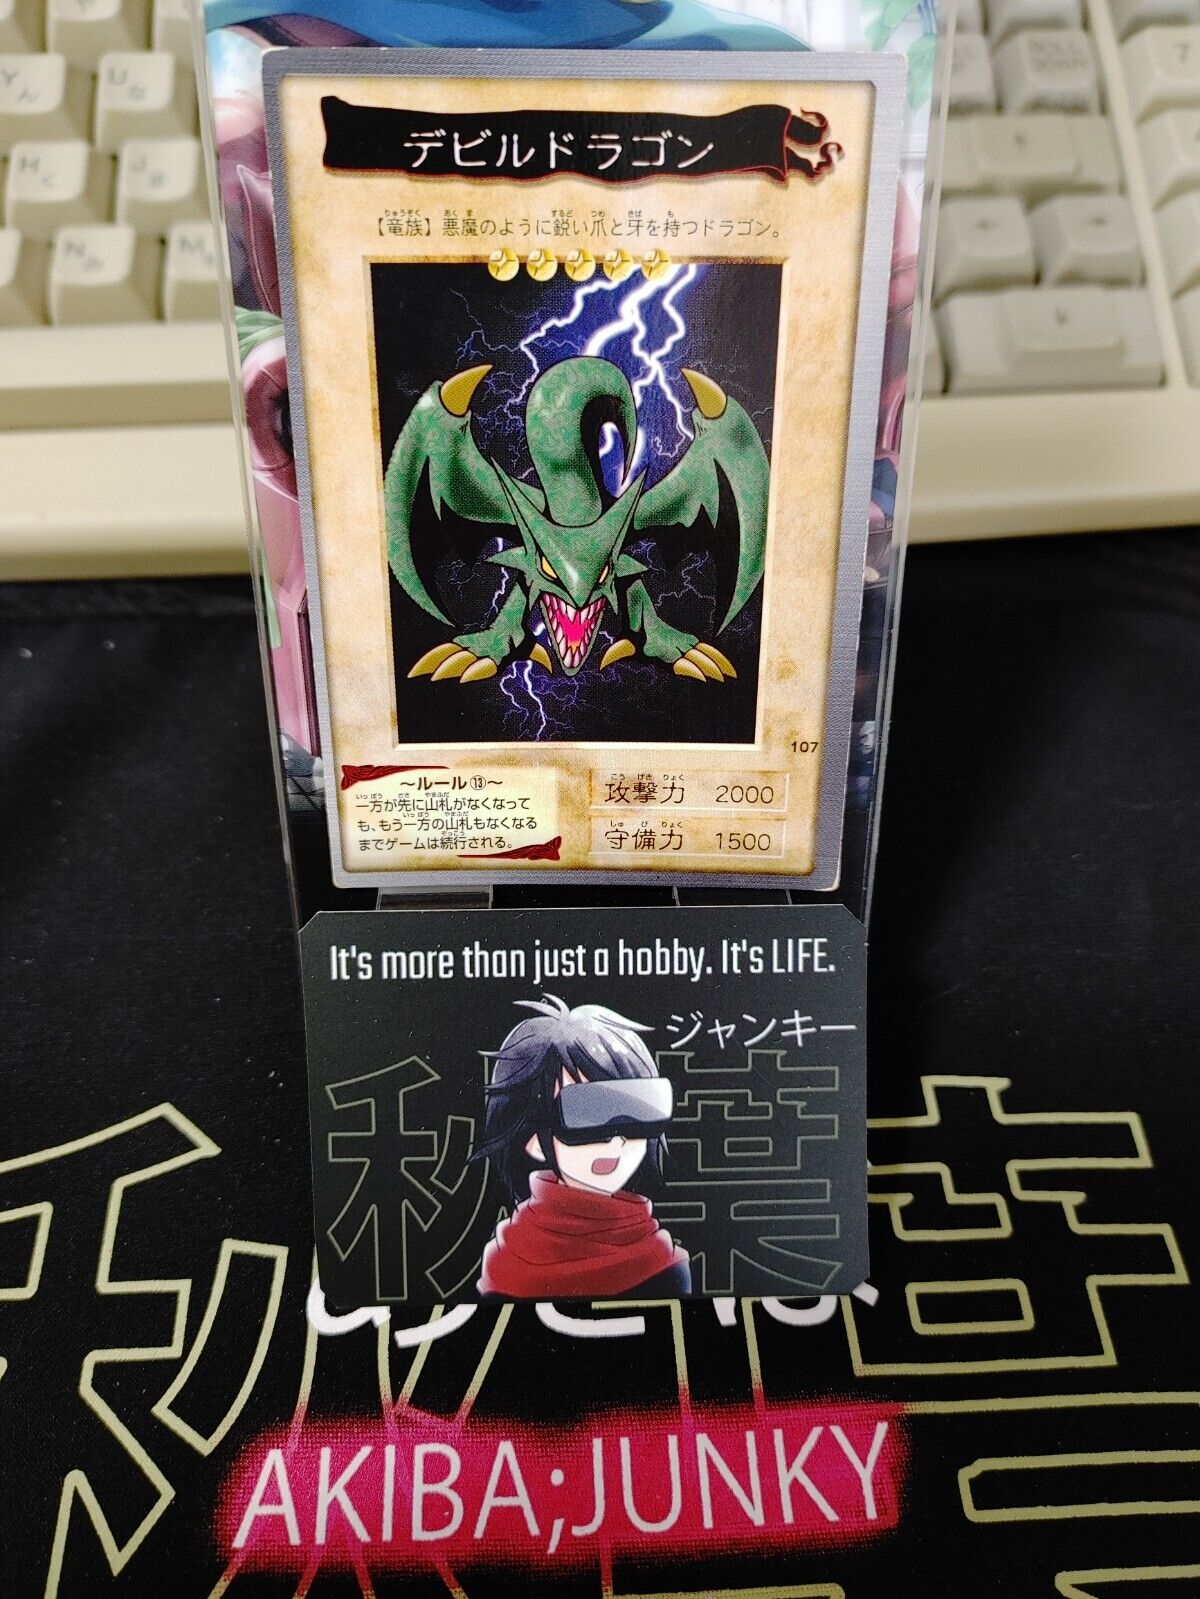 Yu-Gi-Oh Bandai Koumori Dragon Carddass #107 Japanese Retro Japan